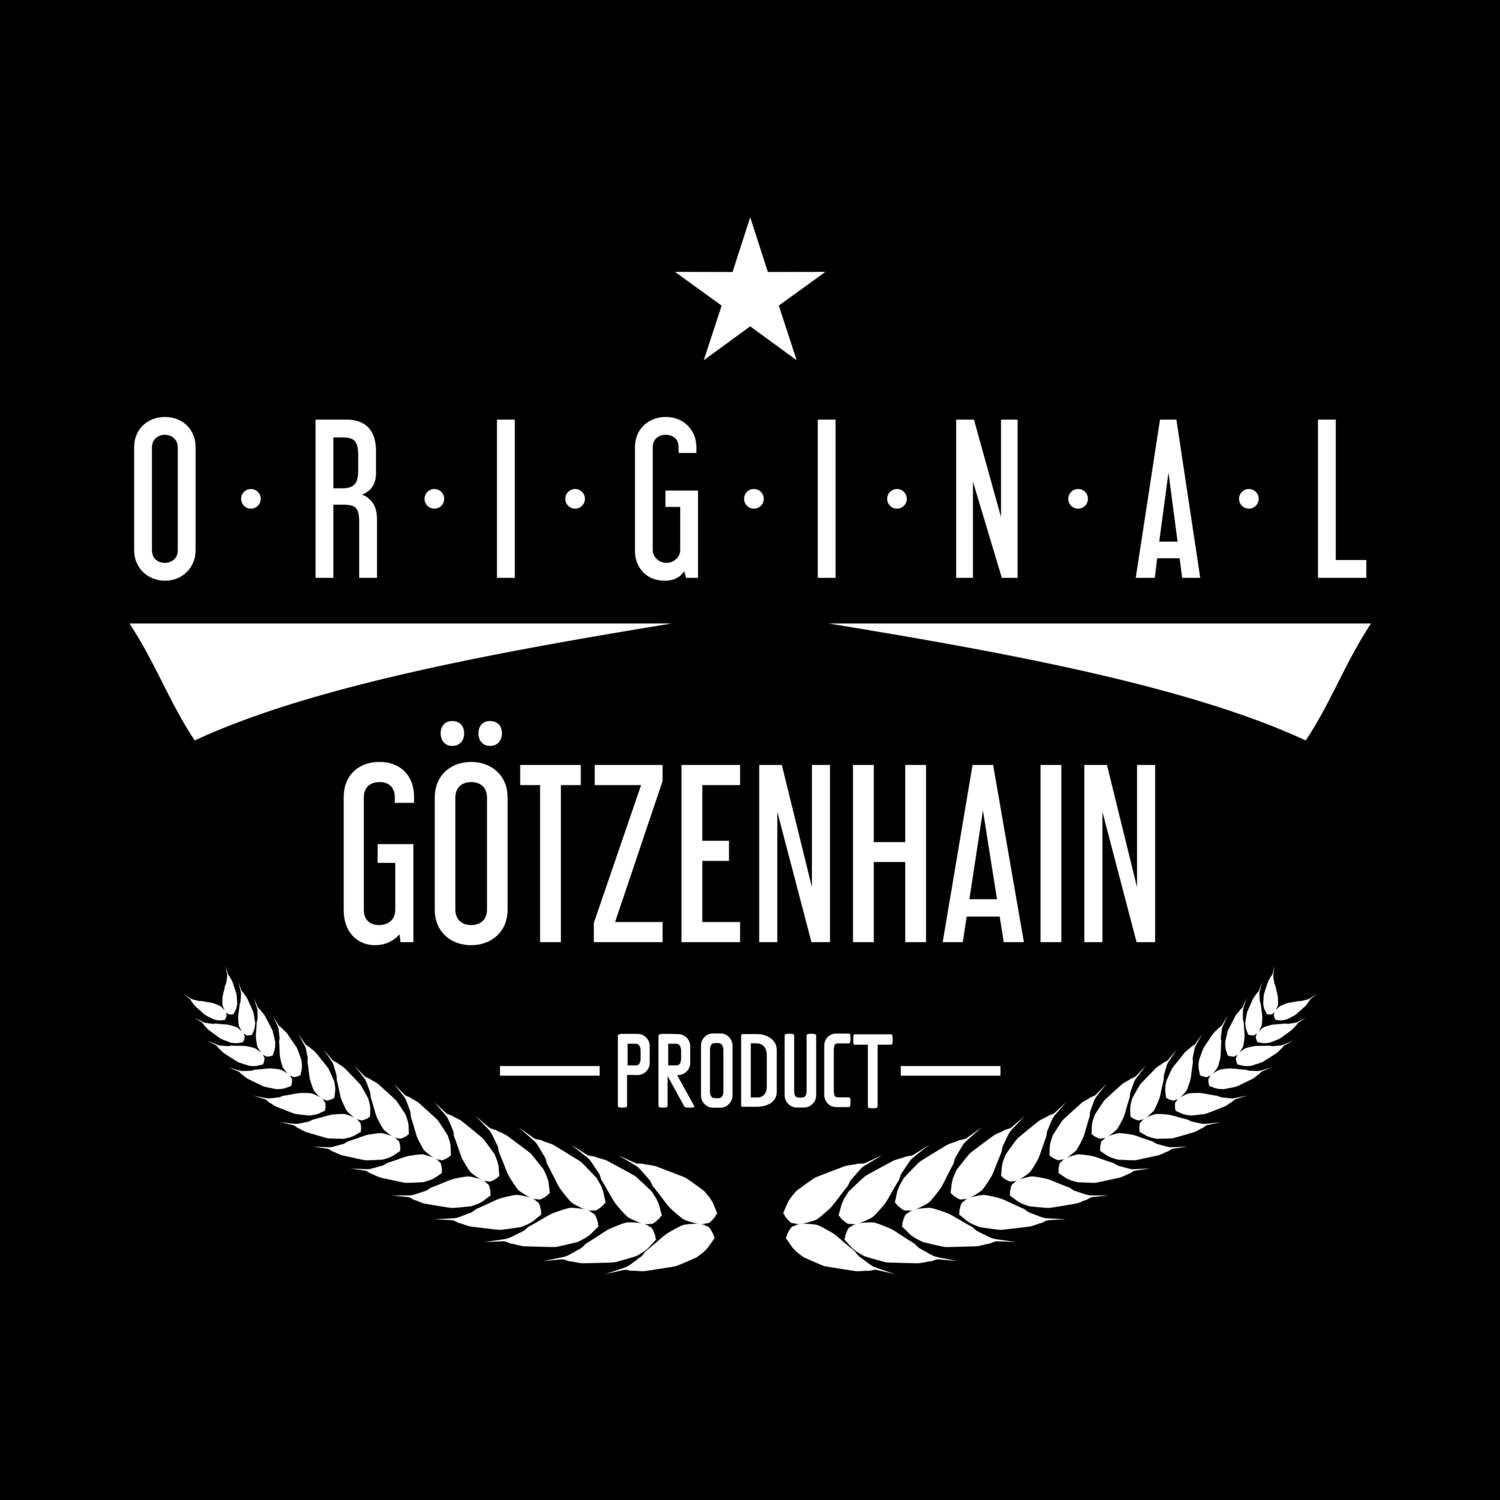 Götzenhain T-Shirt »Original Product«